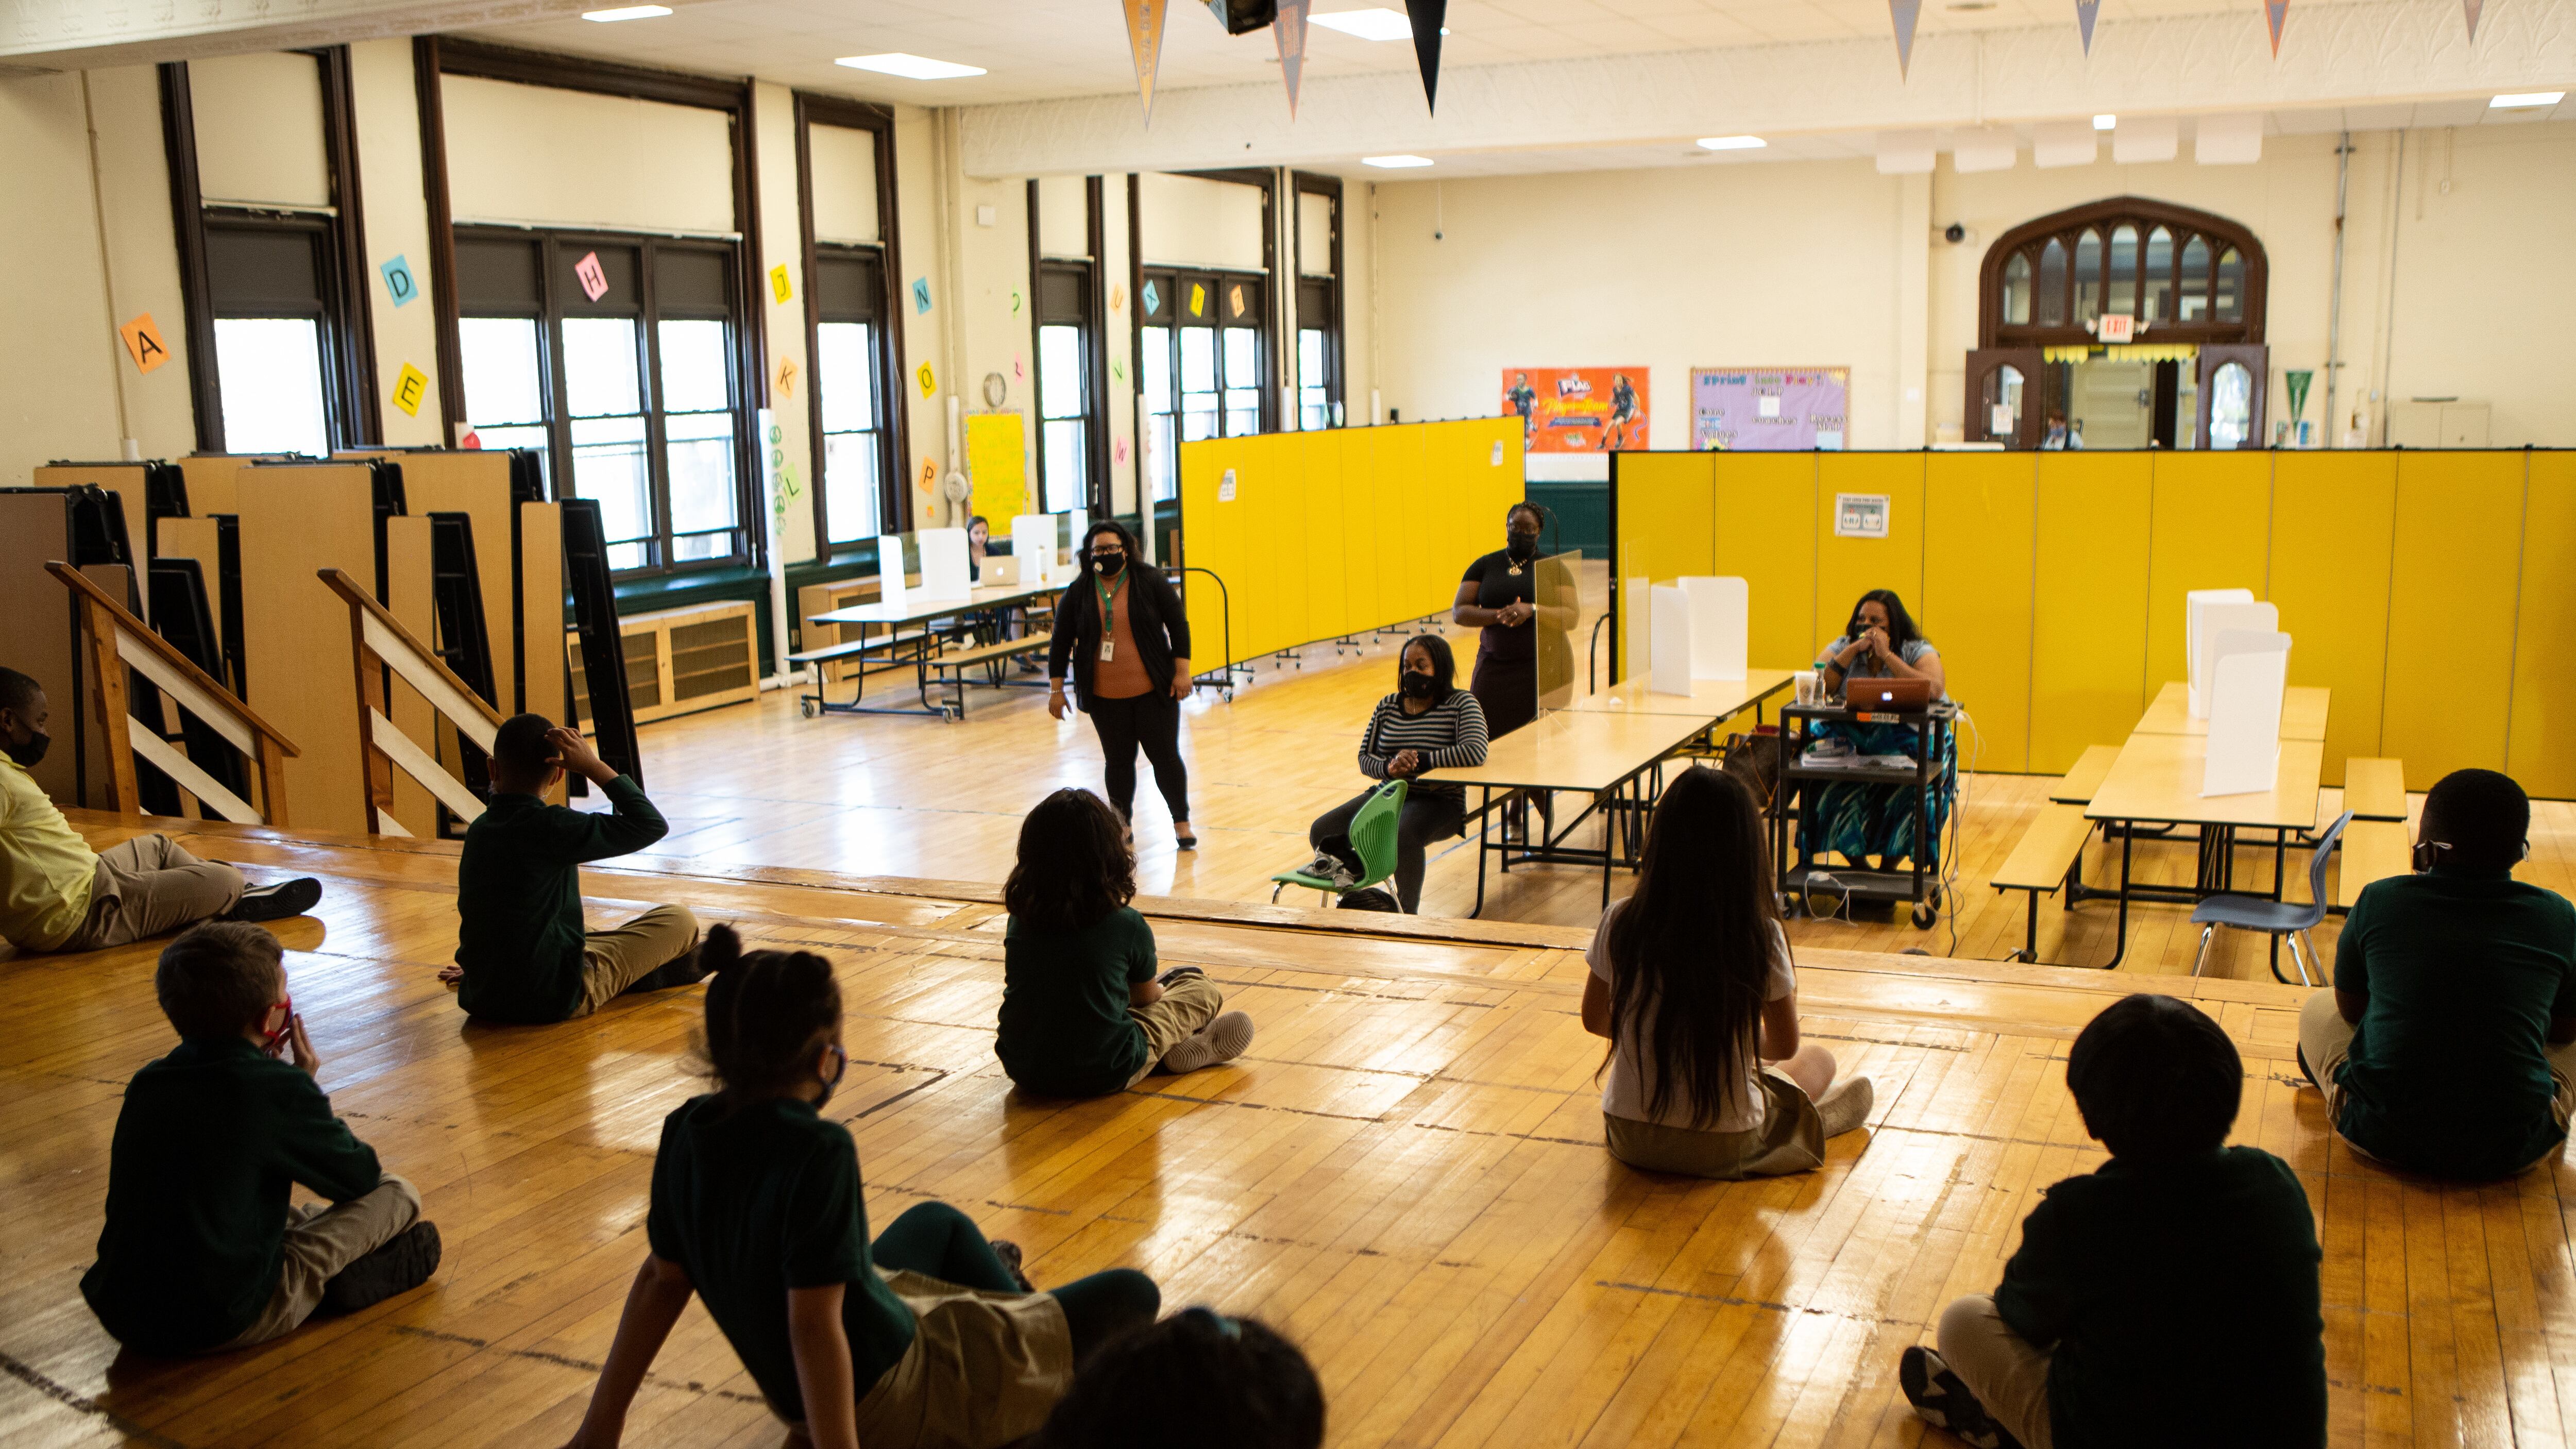 Students sit cross-legged on wood floors.